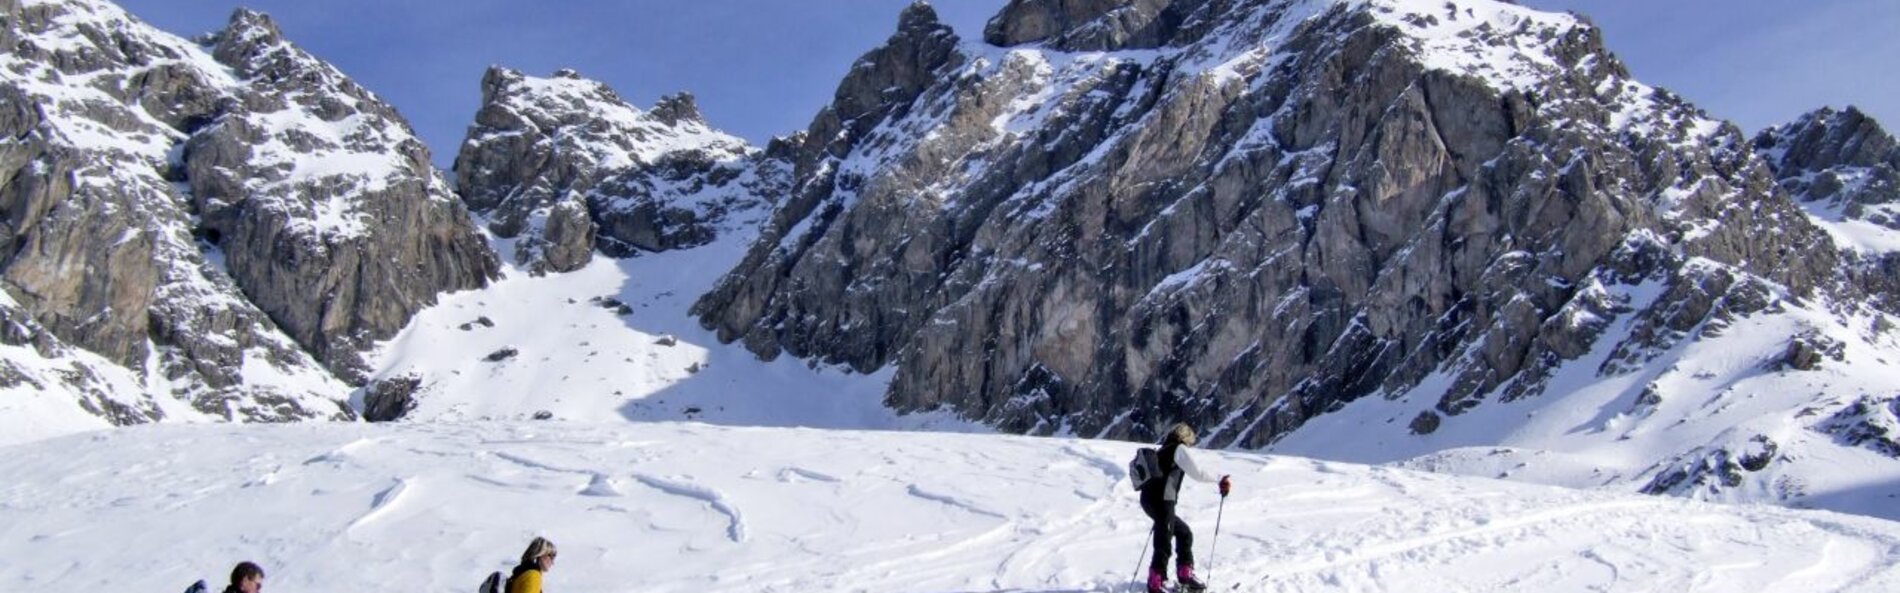 3 ski tourers during the ascent © Zlöbl